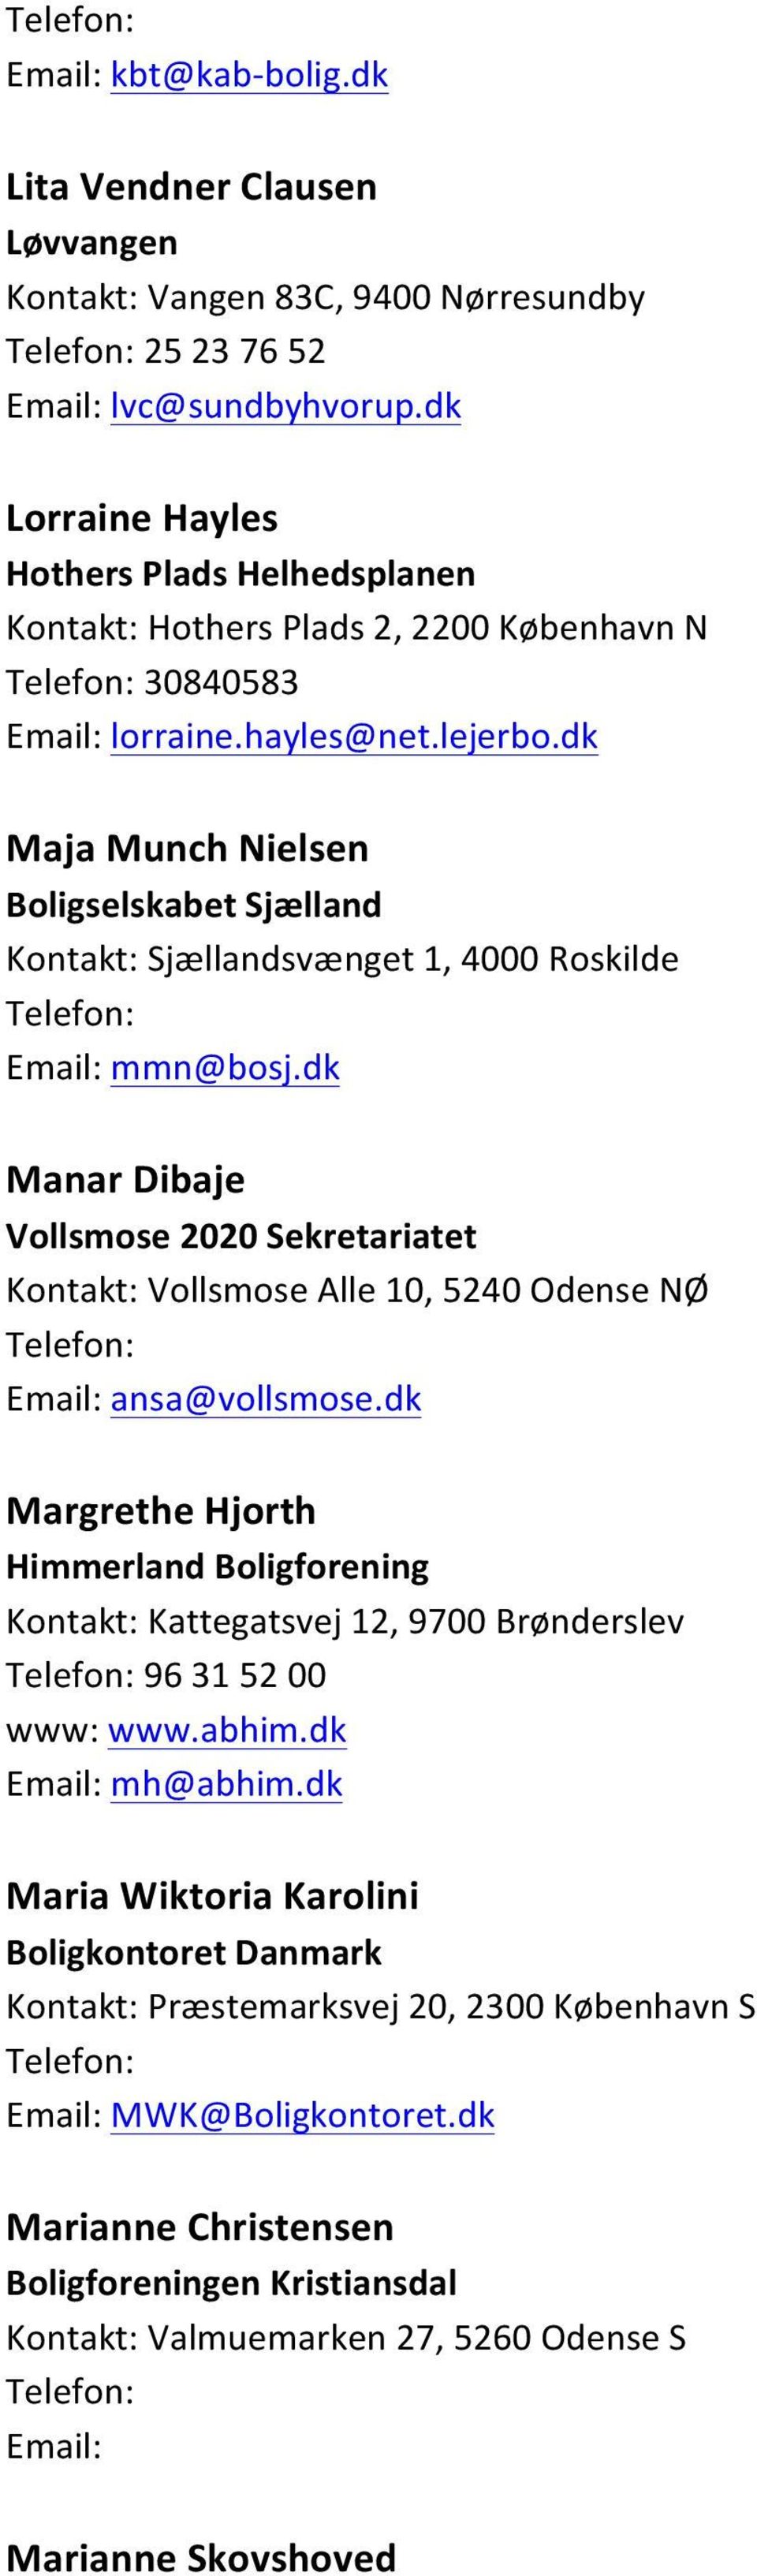 dk Maja Munch Nielsen Boligselskabet Sjælland Kontakt: Sjællandsvænget 1, 4000 Roskilde Email: mmn@bosj.dk Manar Dibaje Kontakt: Vollsmose Alle 10, 5240 Odense NØ Email: ansa@vollsmose.